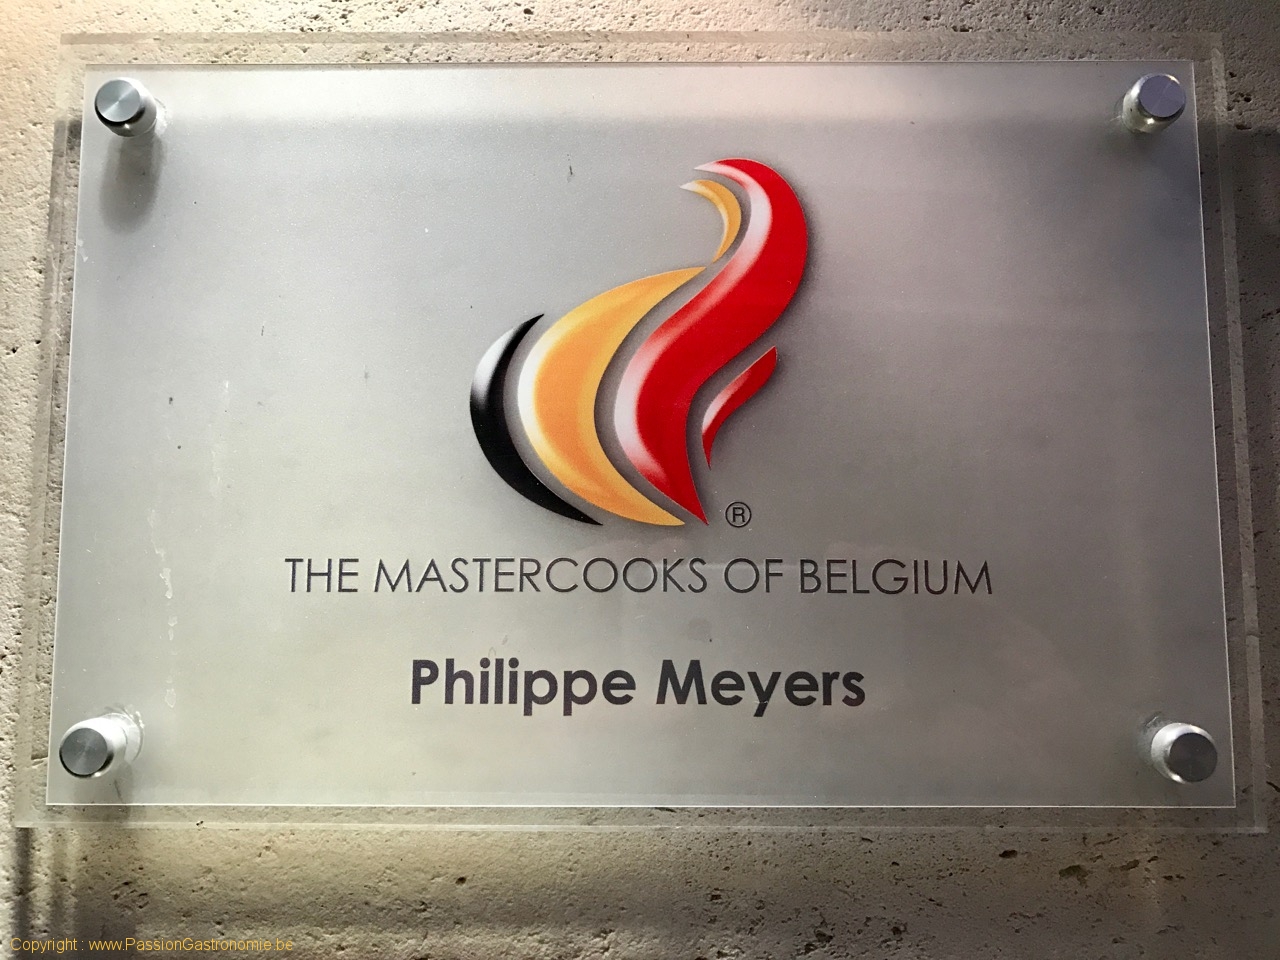 Restaurant Philippe Meyers - Mastercooks of Belgium